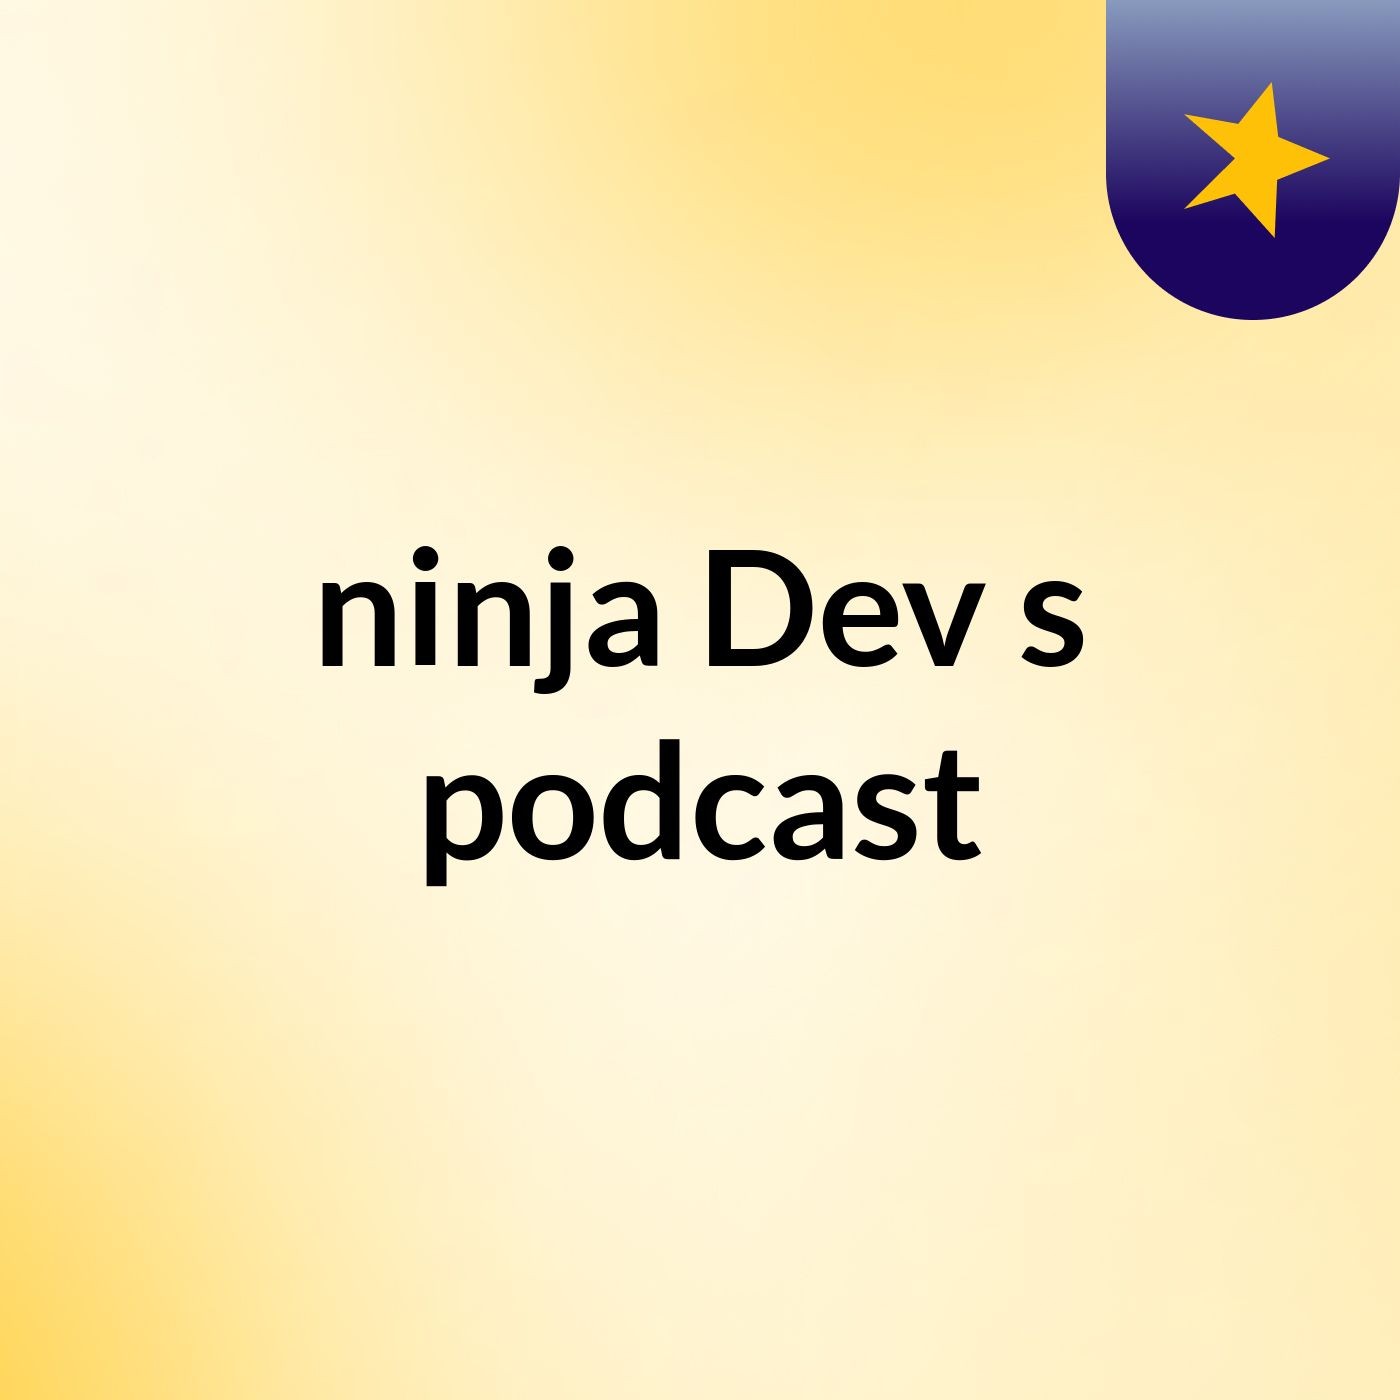 Episode 3 - ninja Dev's podcast